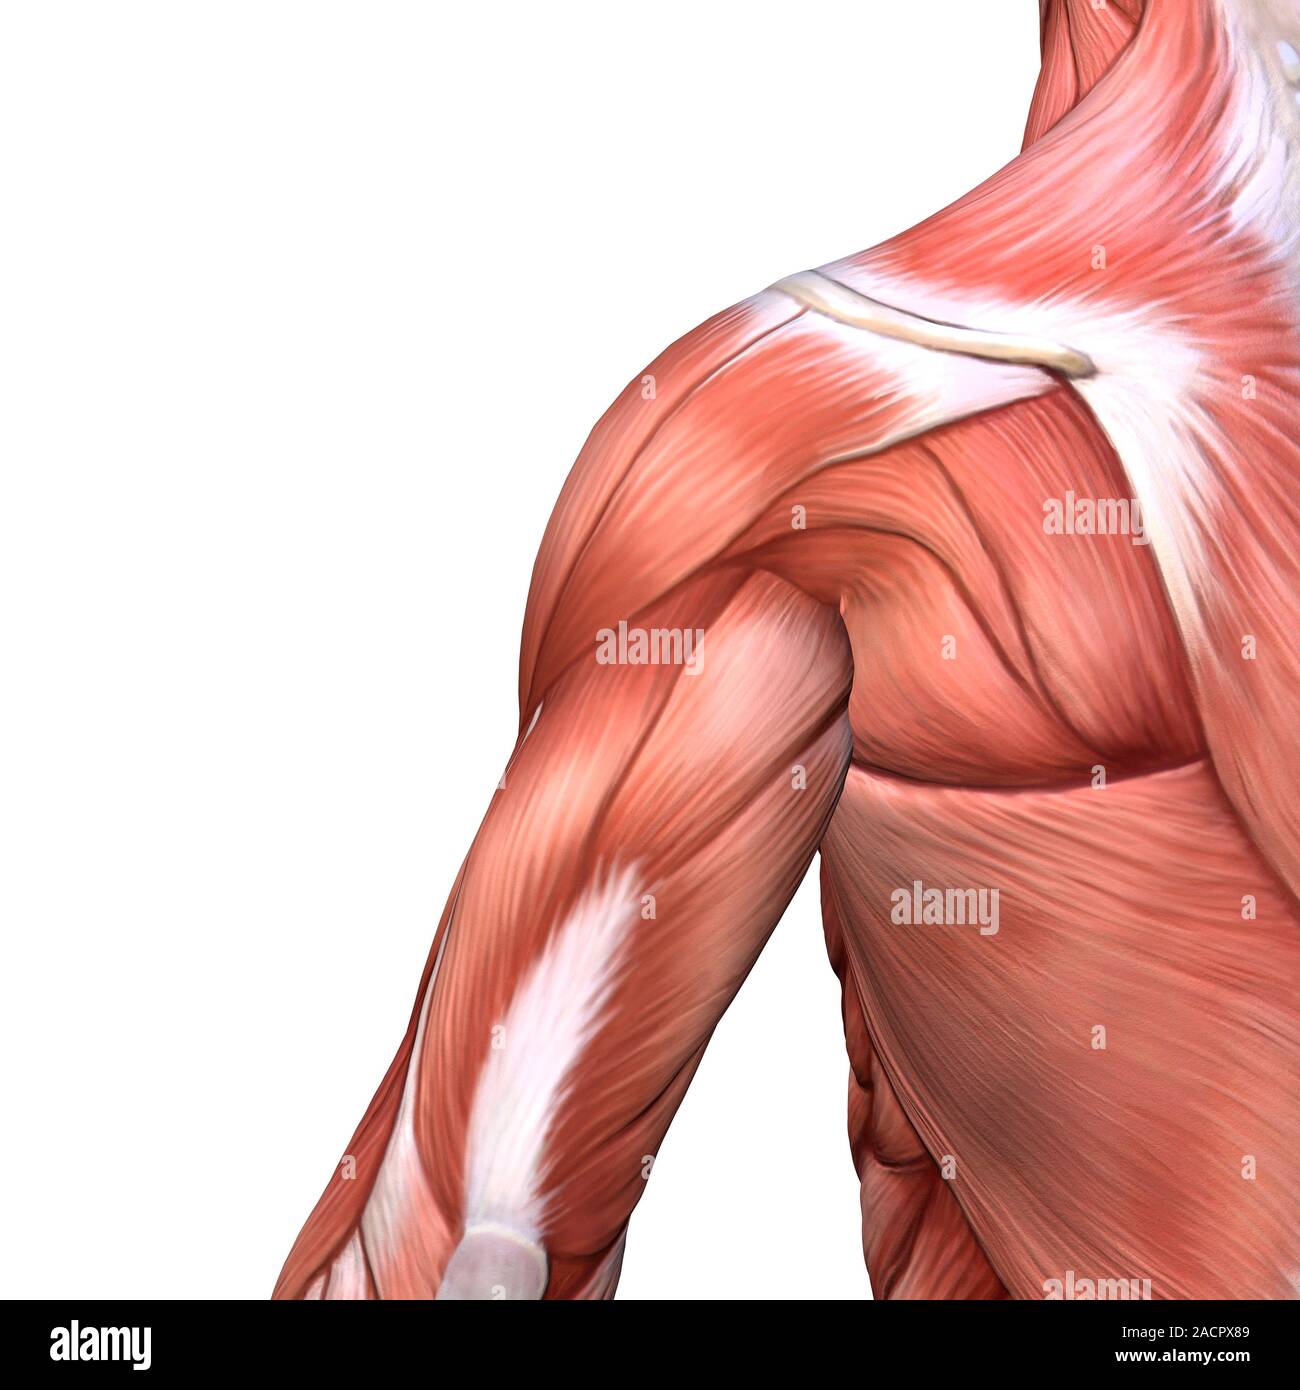 Hombro y músculos de la espalda. Ilustración de los músculos de los hombros  y la parte superior de la espalda en una vista posterior (trasera). Los  músculos se muestra aquí incluyen el